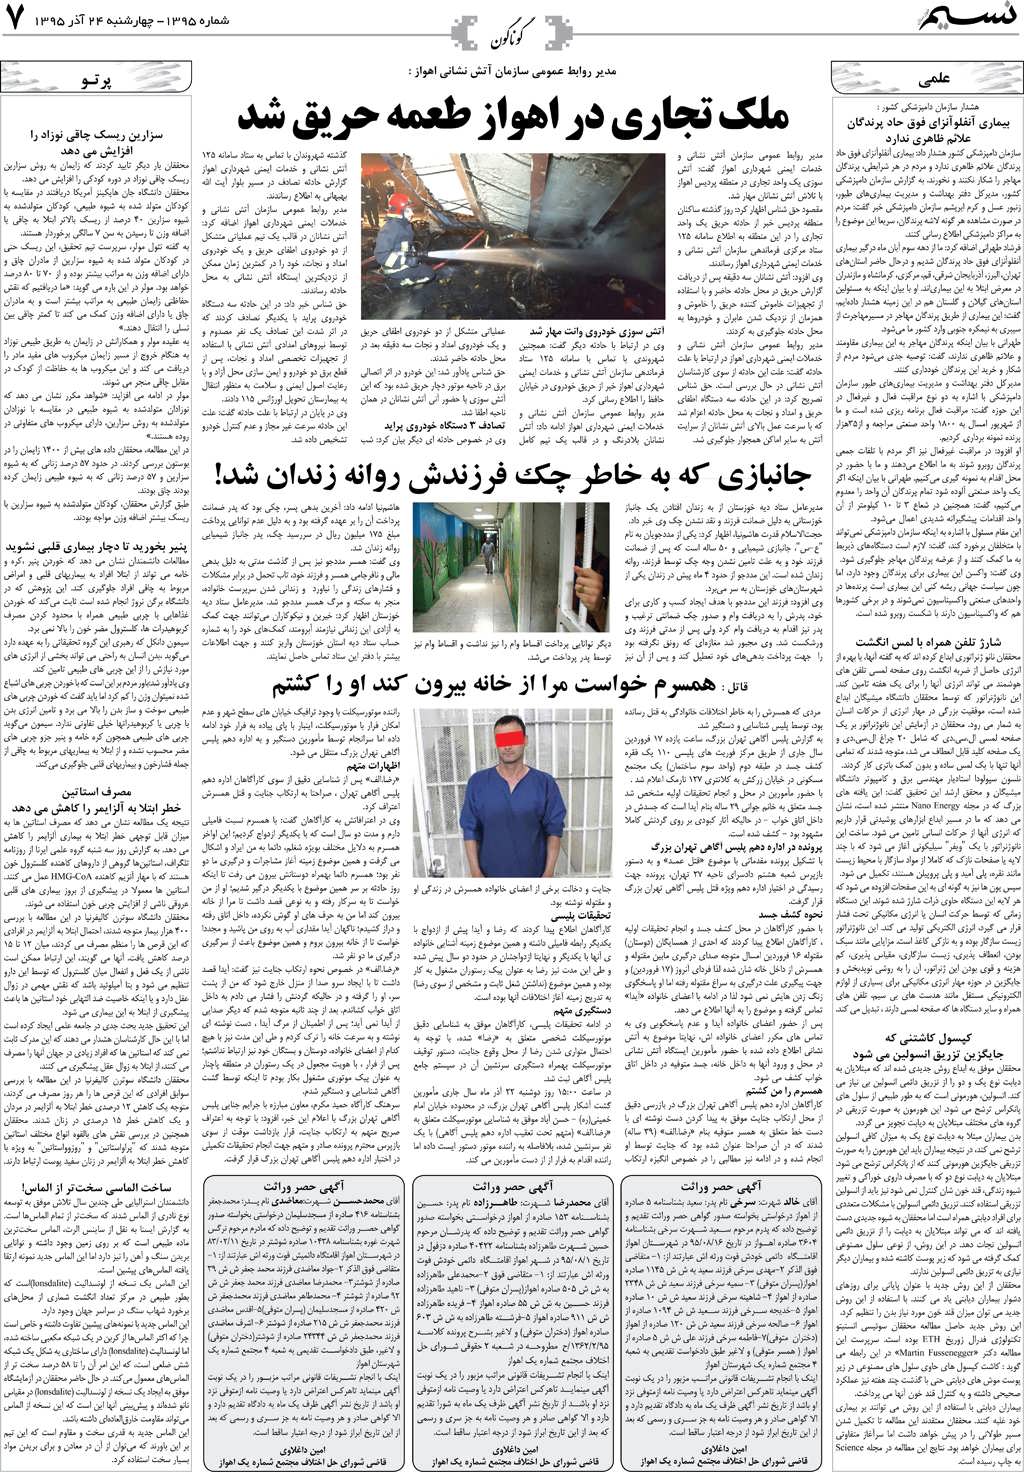 صفحه گوناگون روزنامه نسیم شماره 1395